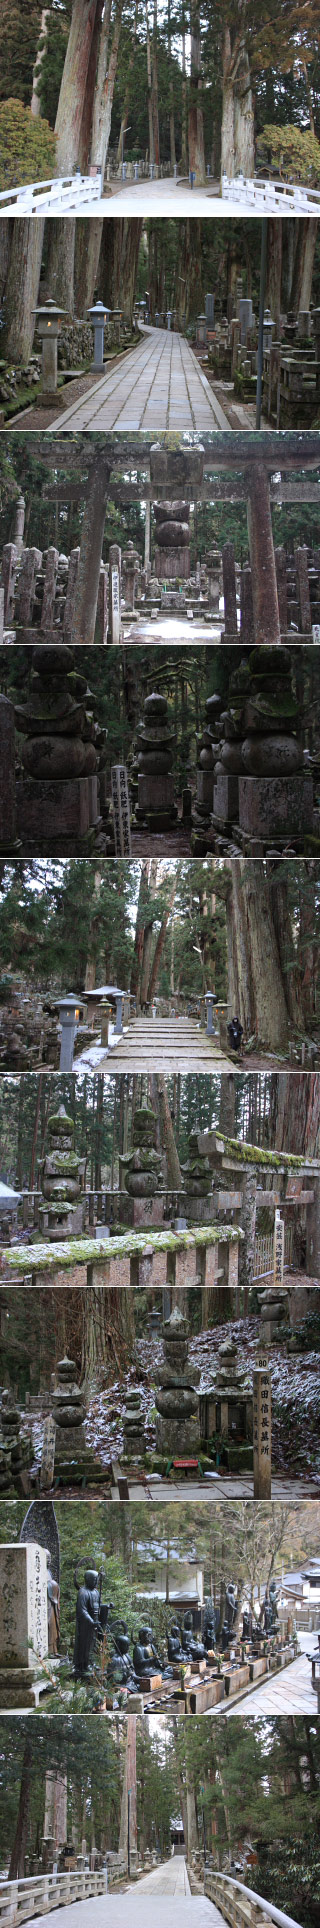 Mausoleum of Kobo Daishi